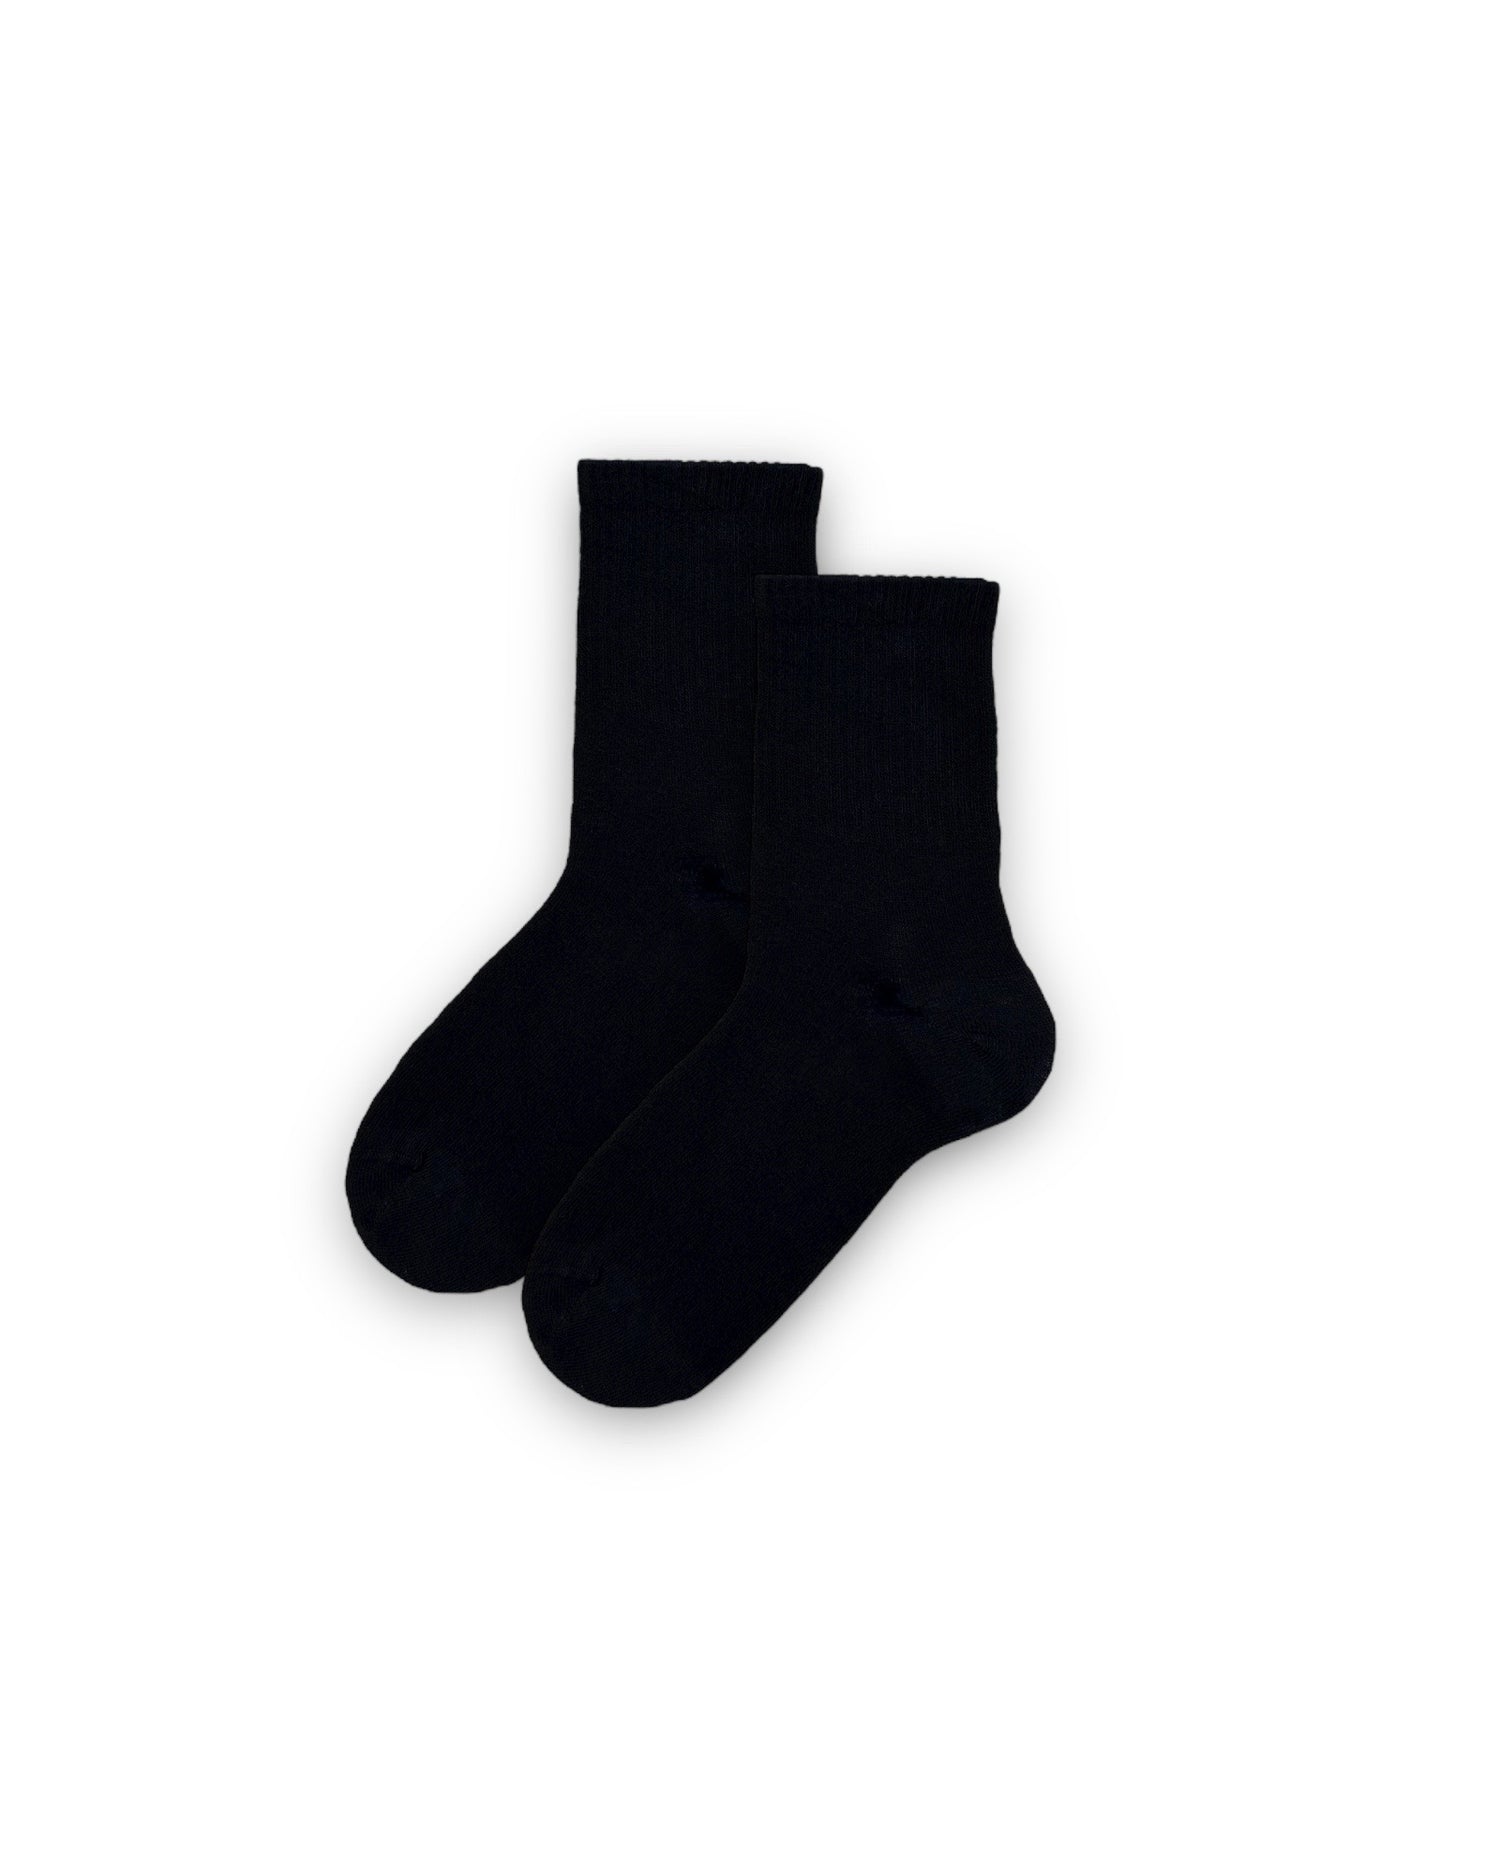 Düz Siyah Unisex Çorap